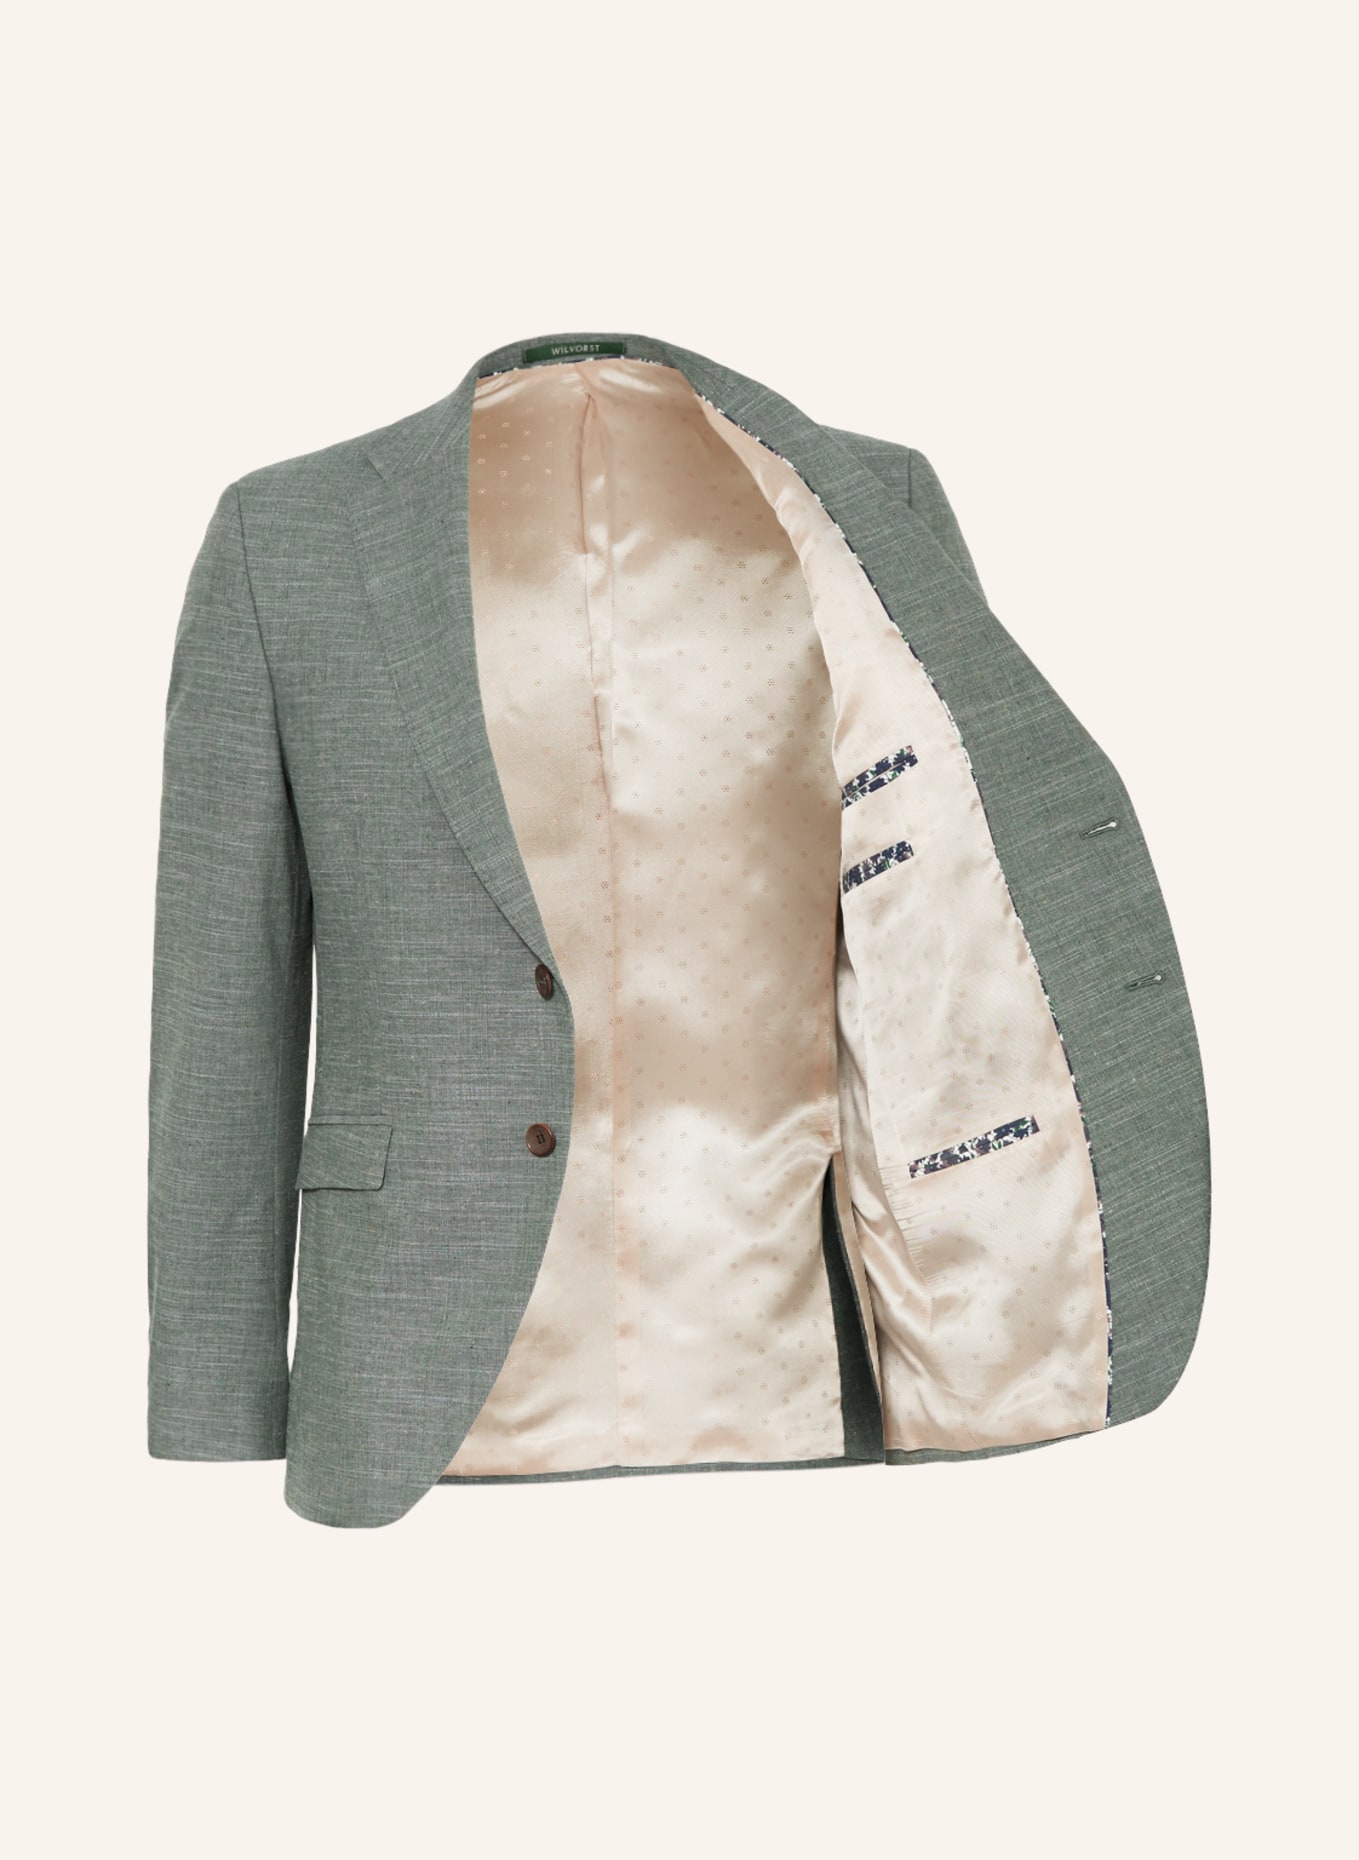 WILVORST Suit jacket extra slim fit, Color: 044 uni grün (Image 4)